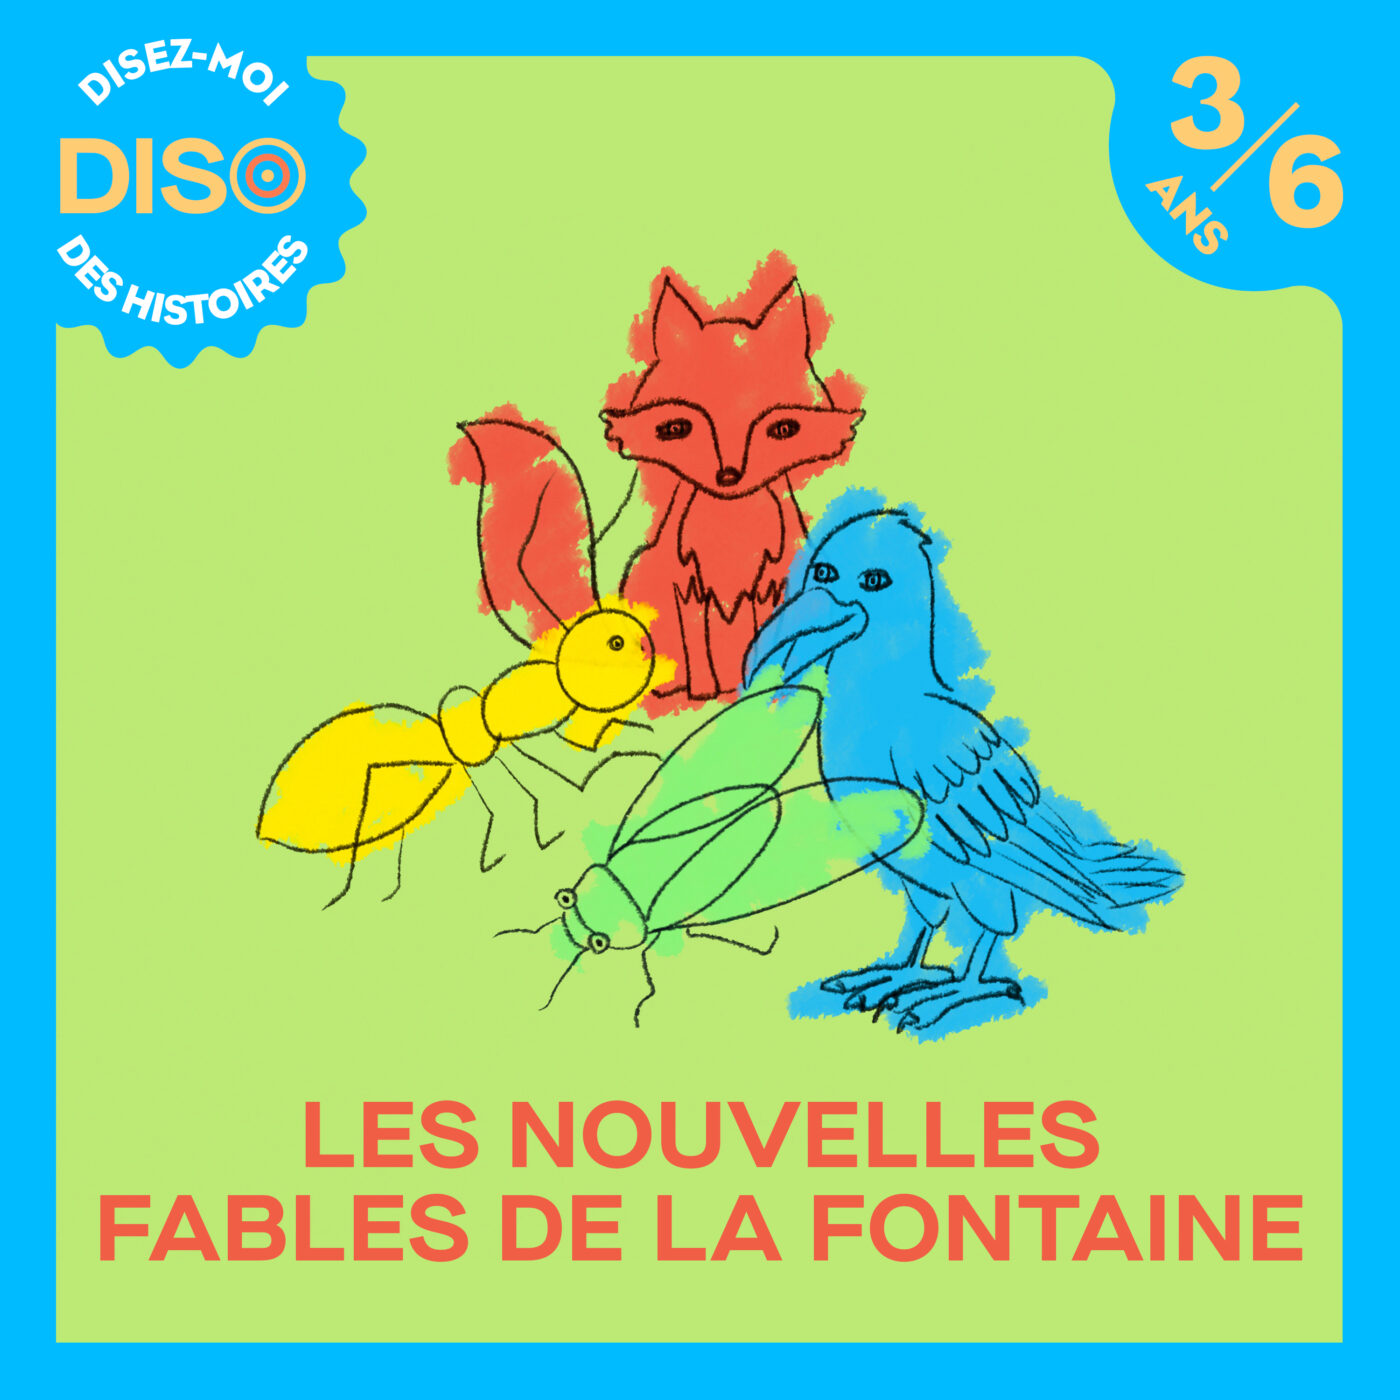 Les nouvelles fables de La Fontaine - Le Corbeau et le Renard